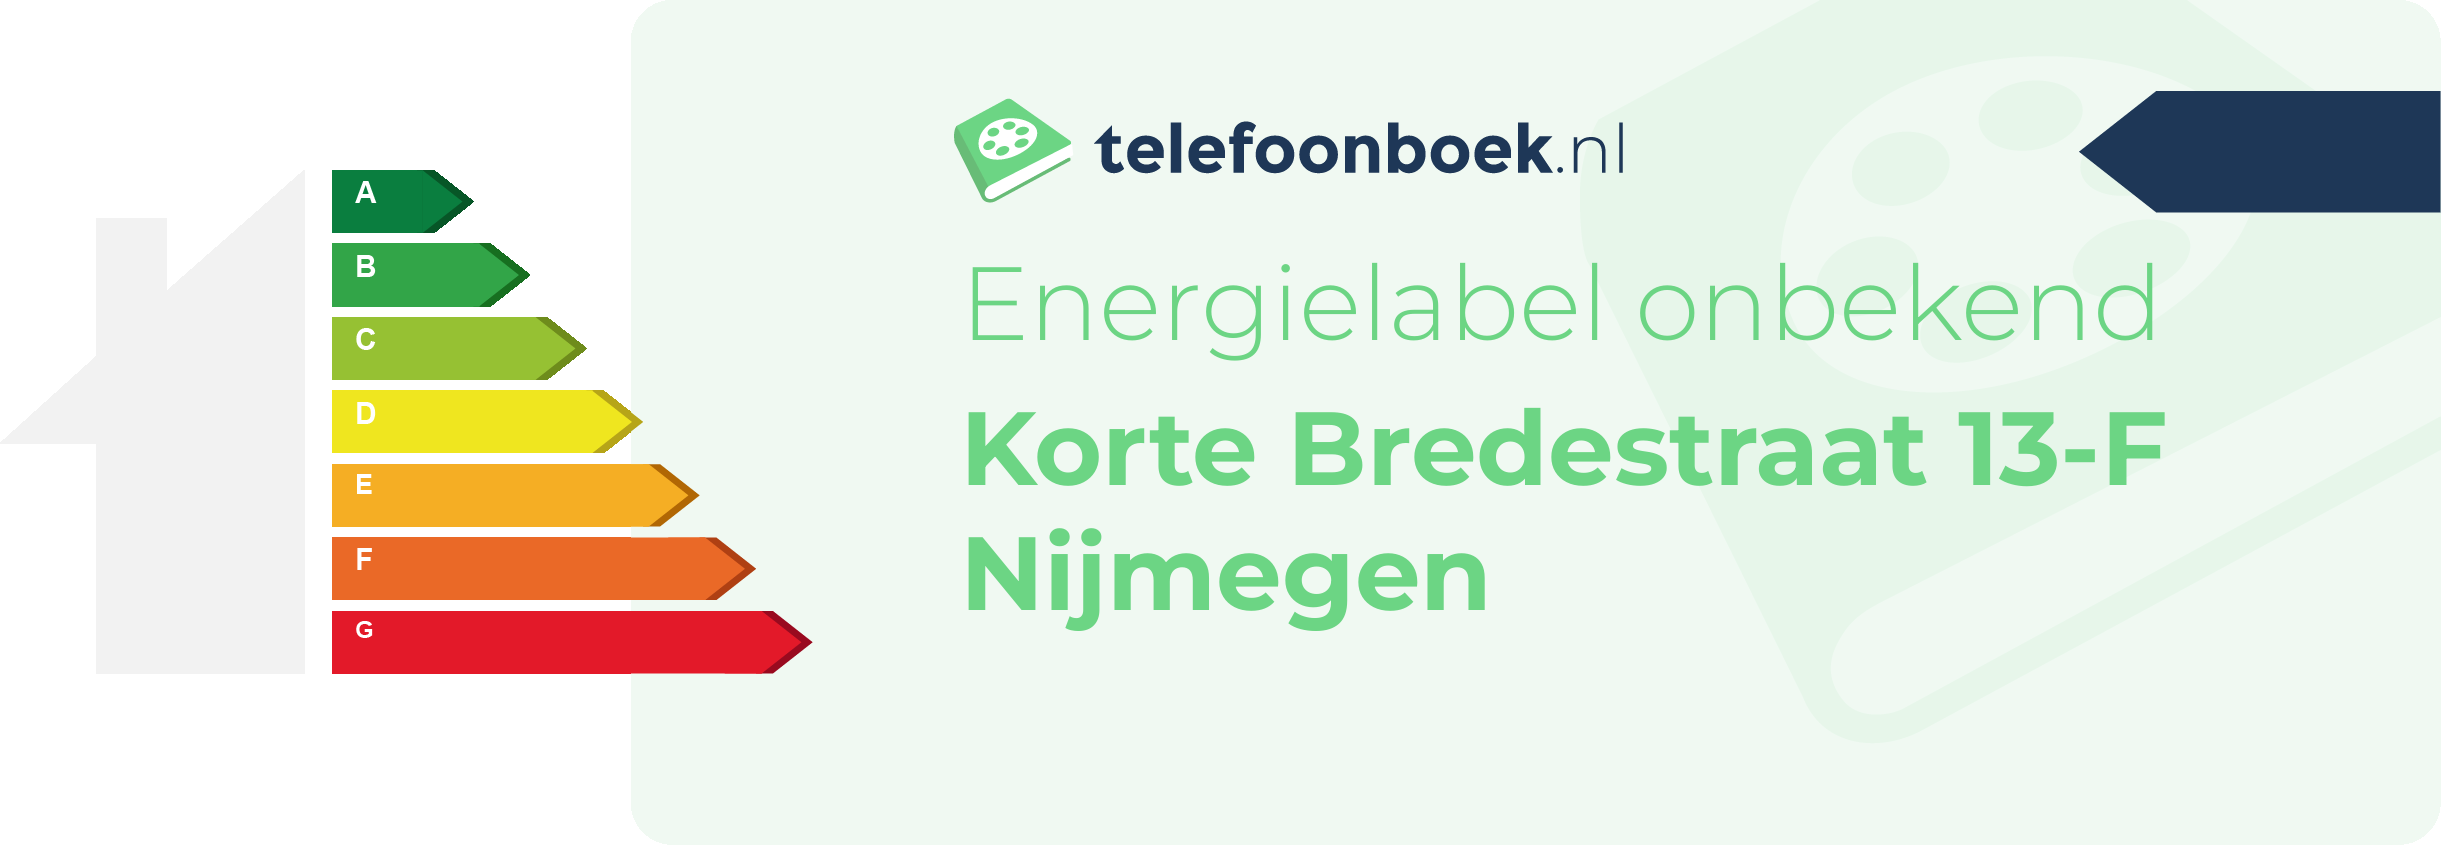 Energielabel Korte Bredestraat 13-F Nijmegen